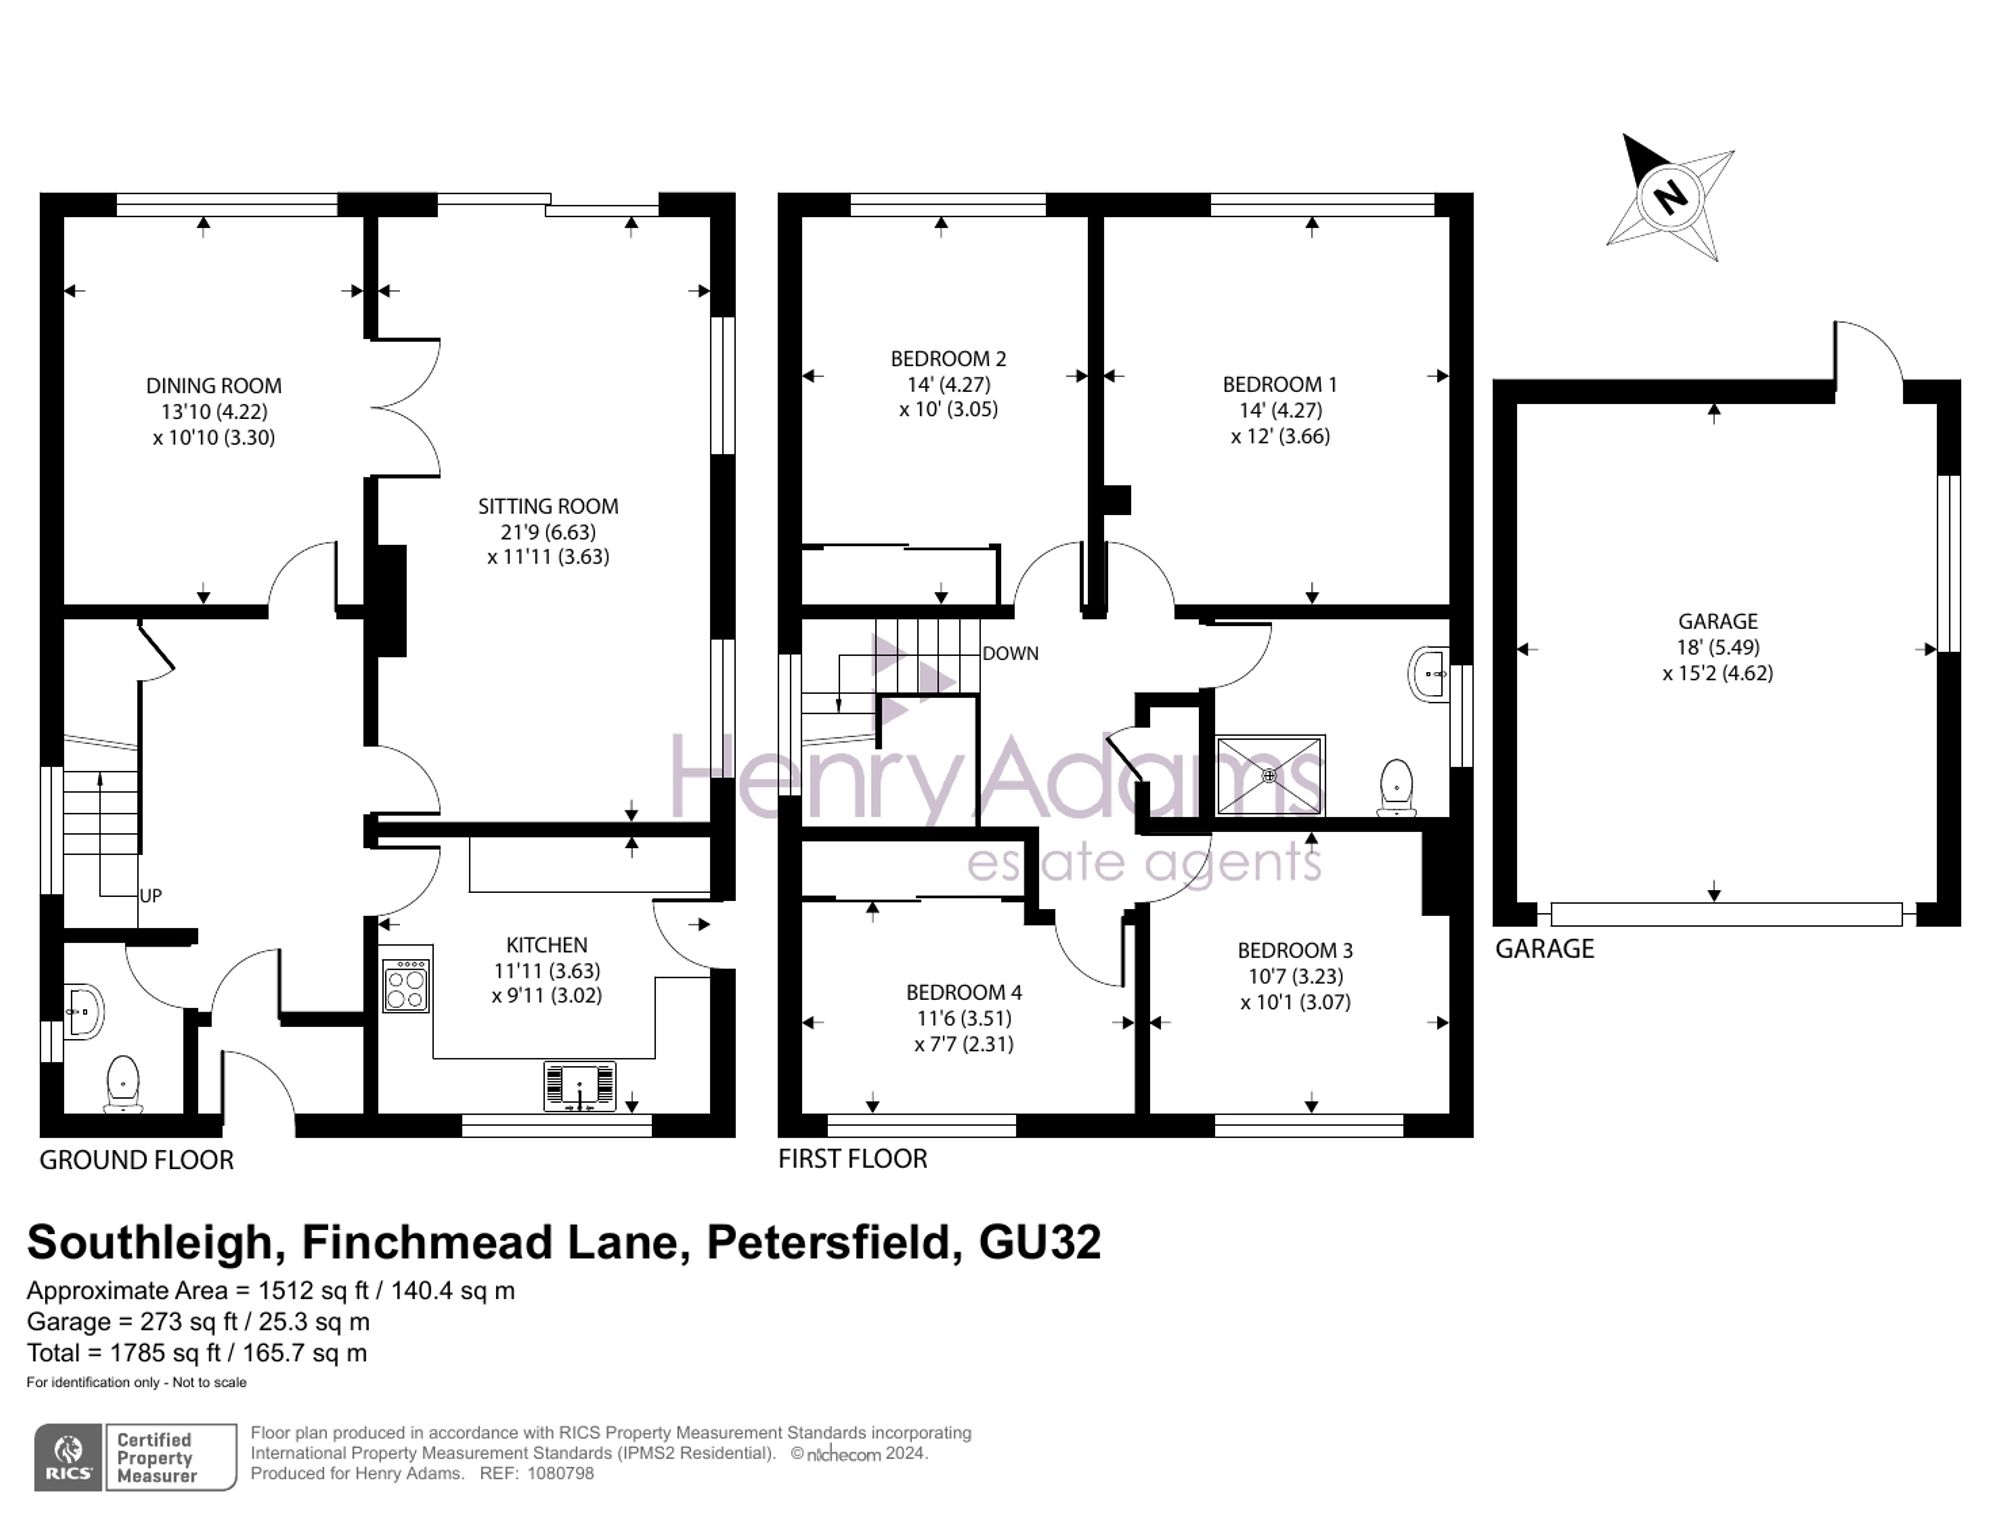 Finchmead Lane, Petersfield, GU32 floorplans